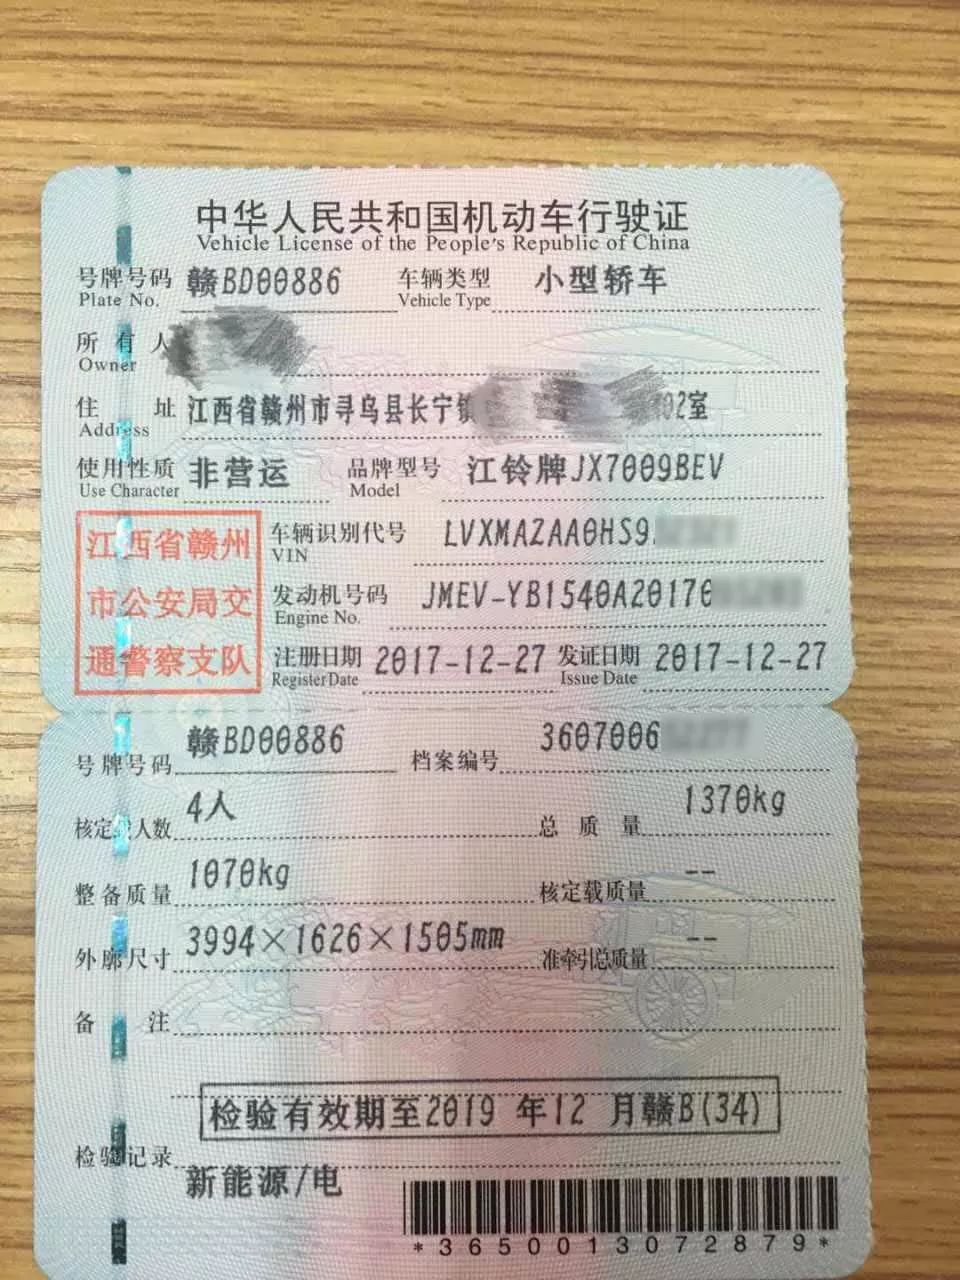 寻乌县首块新能源汽车专用号牌成功申领 正式出炉